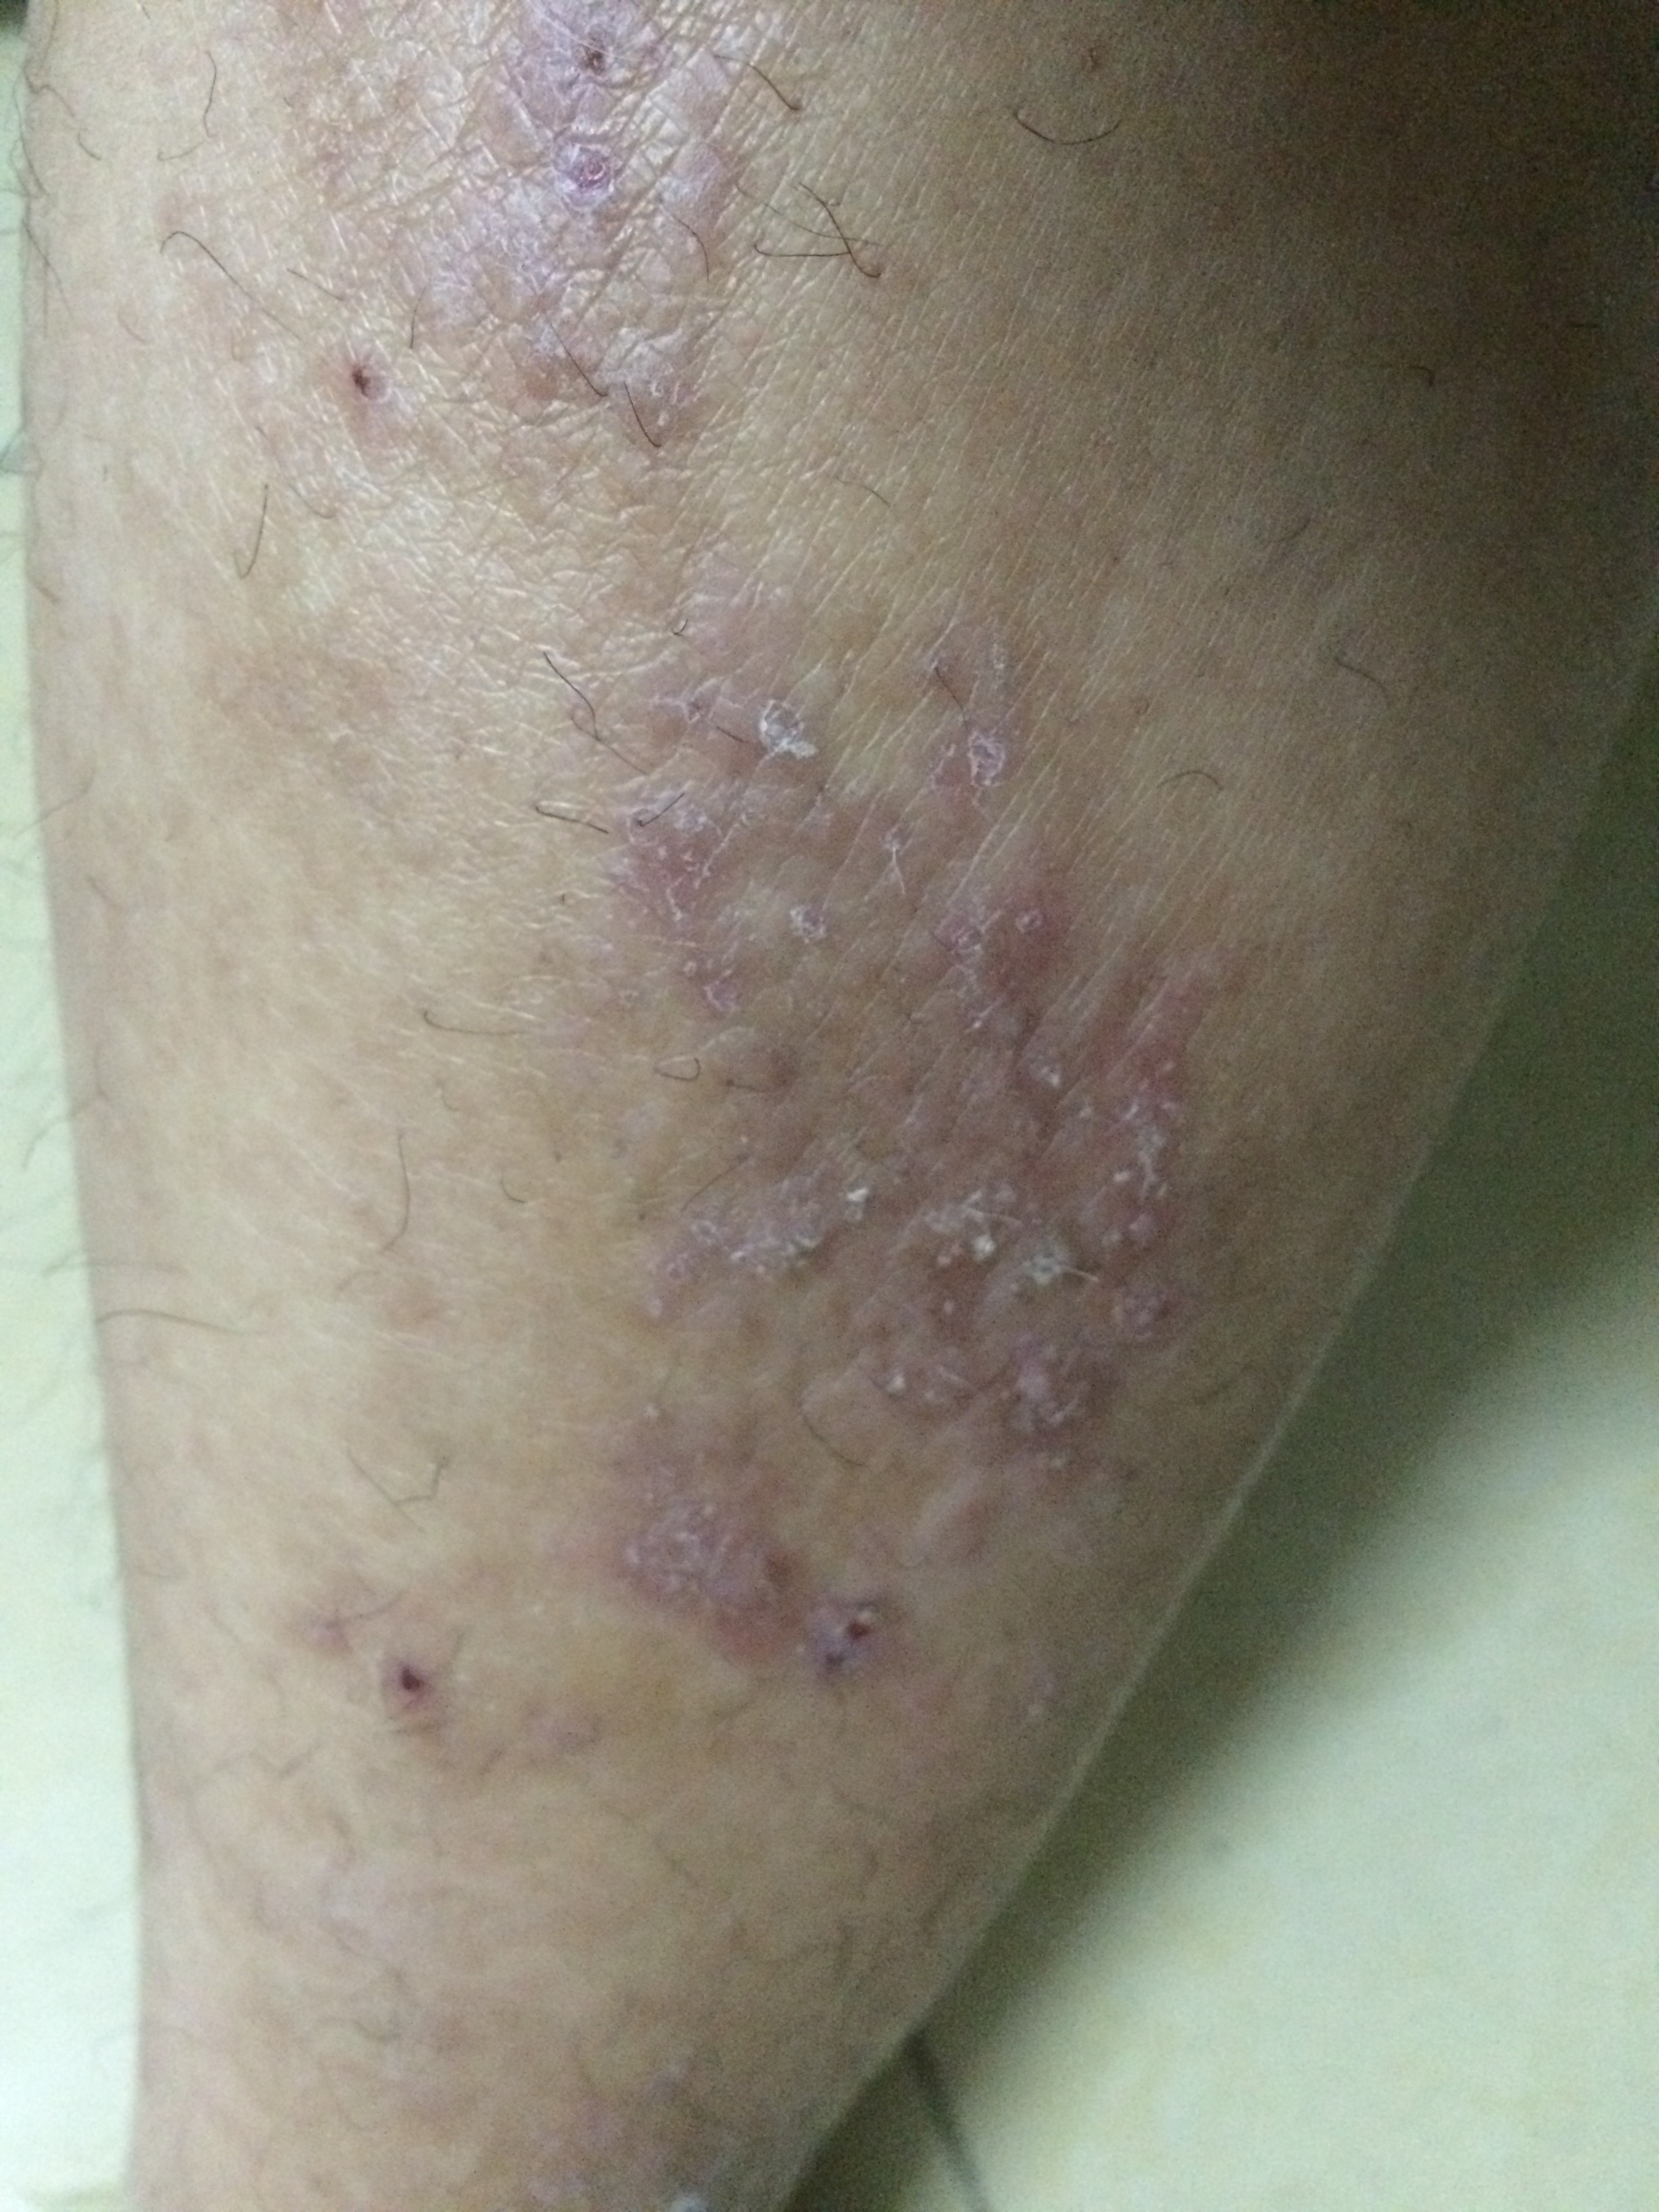 小腿皮肤瘙痒症图片图片